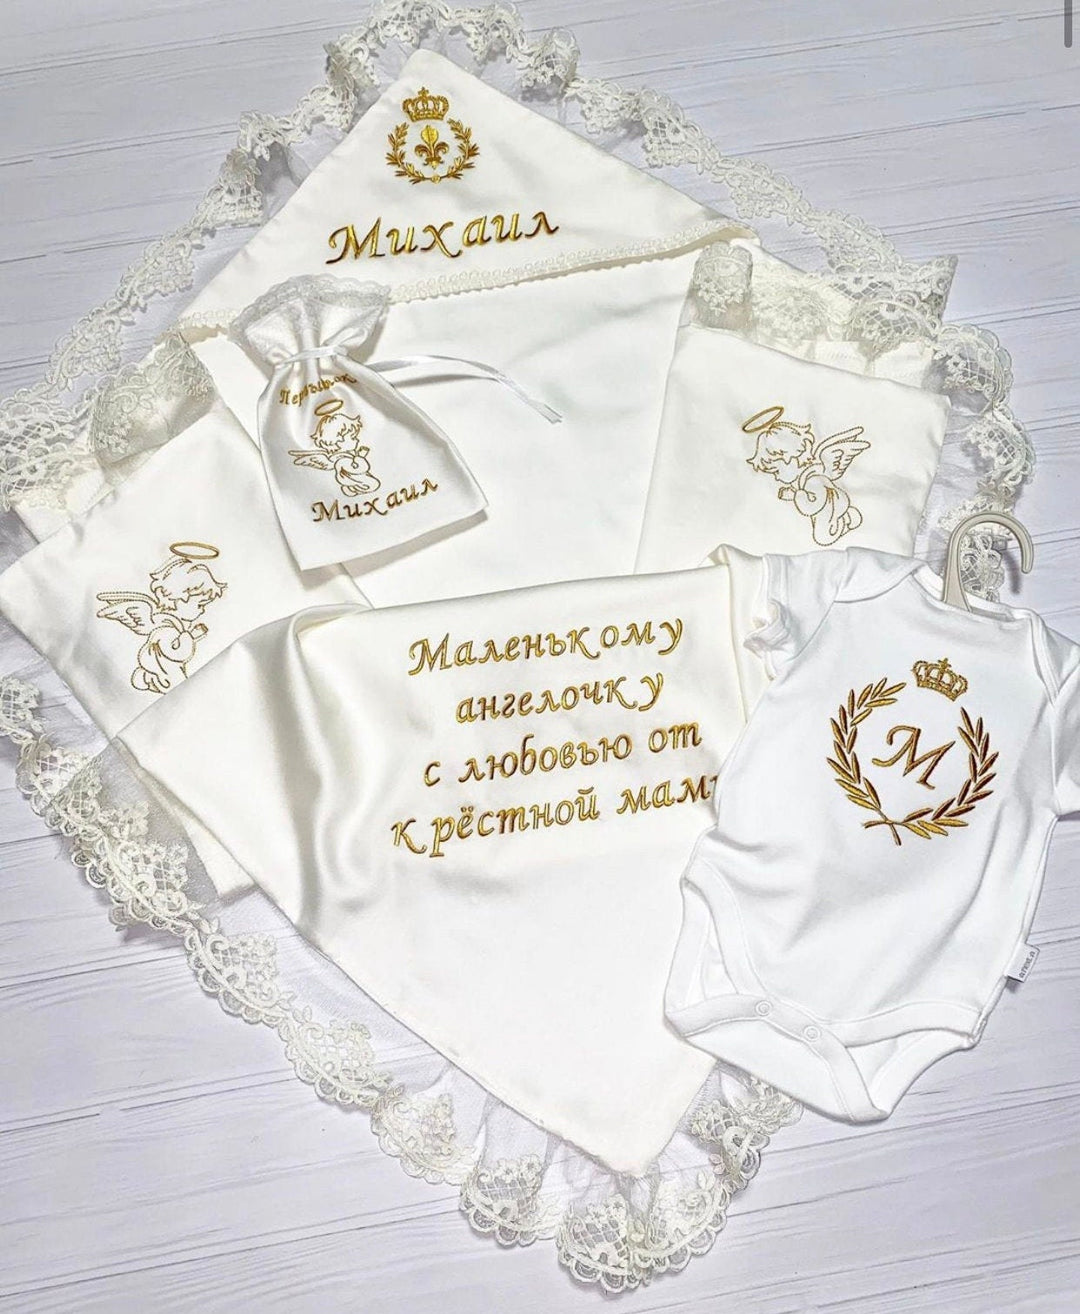 Manta de bautismo bordada personalizada - Regalo de bautizo blanco para su angelito